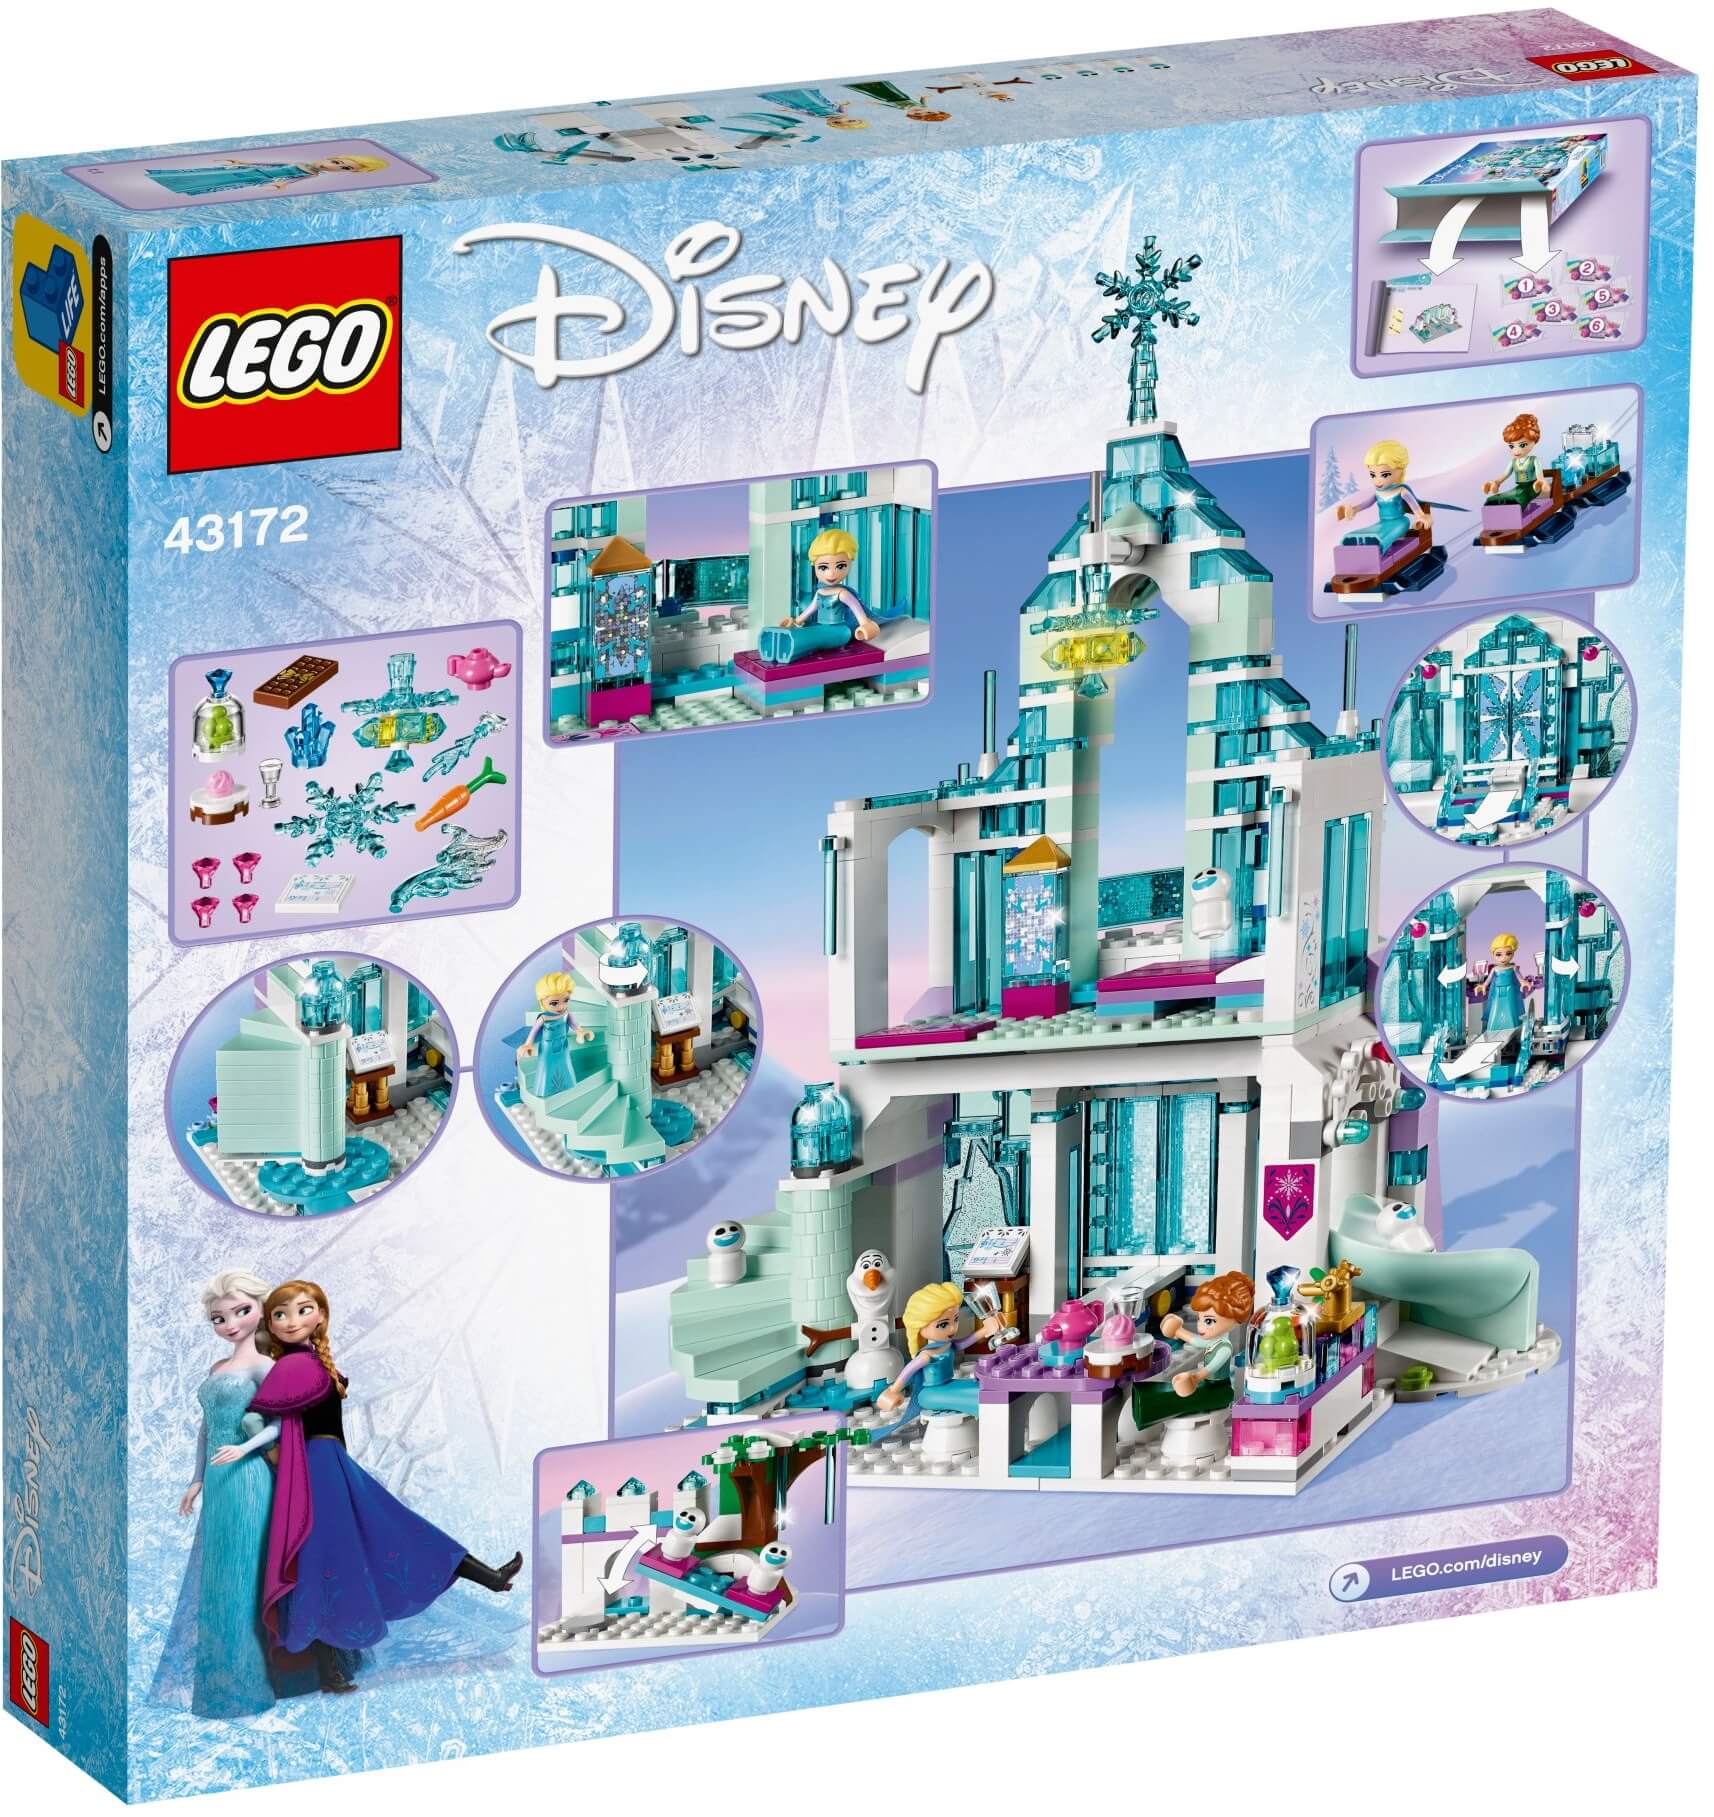 Palacio mágico de hielo de Elsa ( Lego 43172 ) imagen e